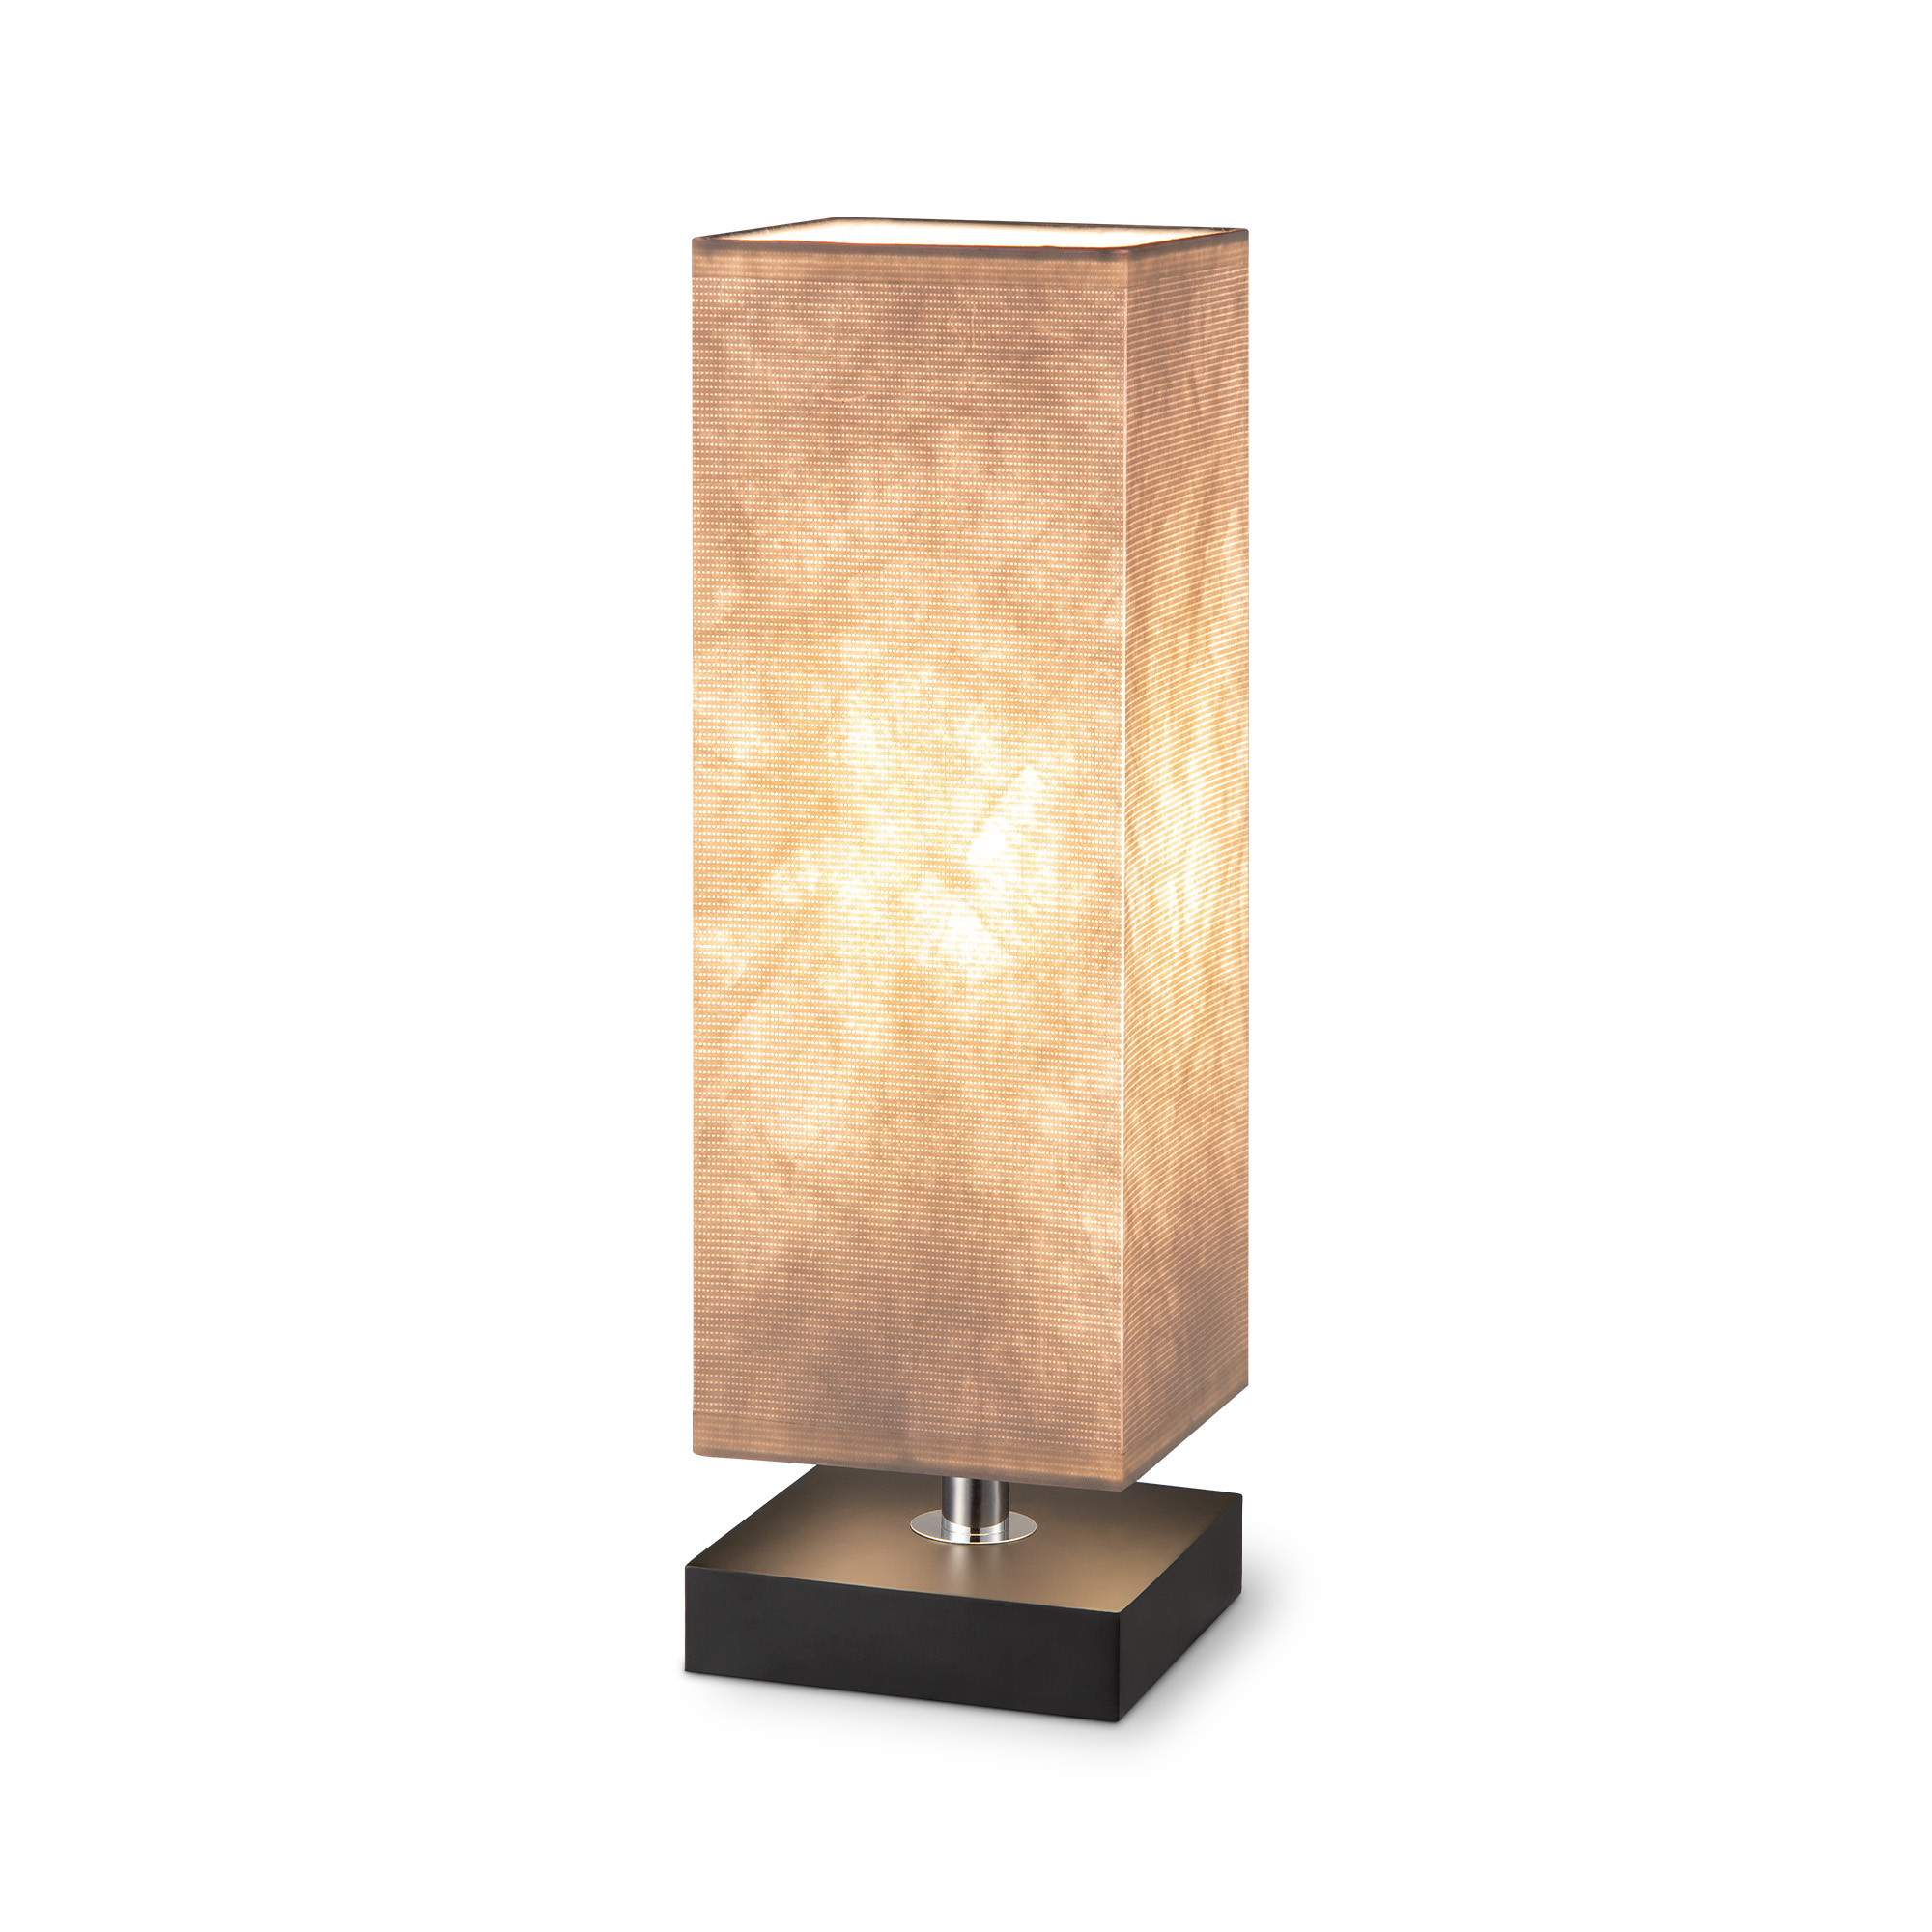 Tangla lighting - TLT7537-01AWB - Table lamp 1 Light - FSC wood + paper - white + black - standard - E27